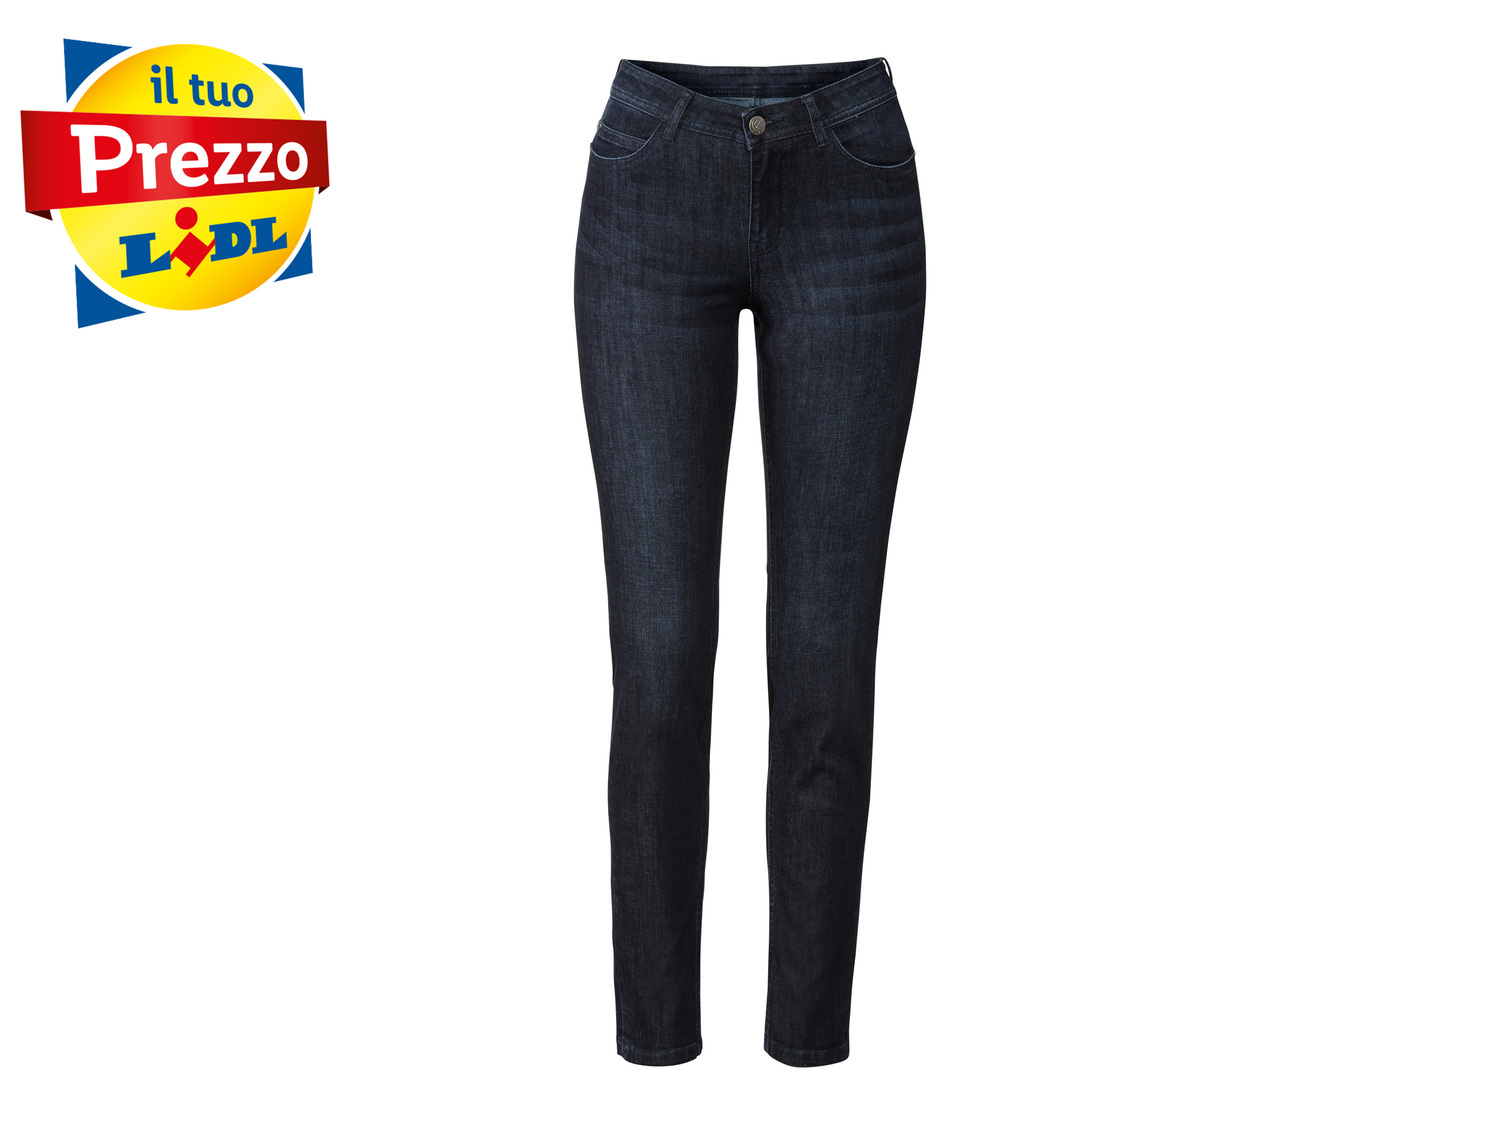 Jeans Skinny da donna Esmara, prezzo 9.99 &#8364; 
Misure: 38-46
Taglie disponibili

Caratteristiche

- ...